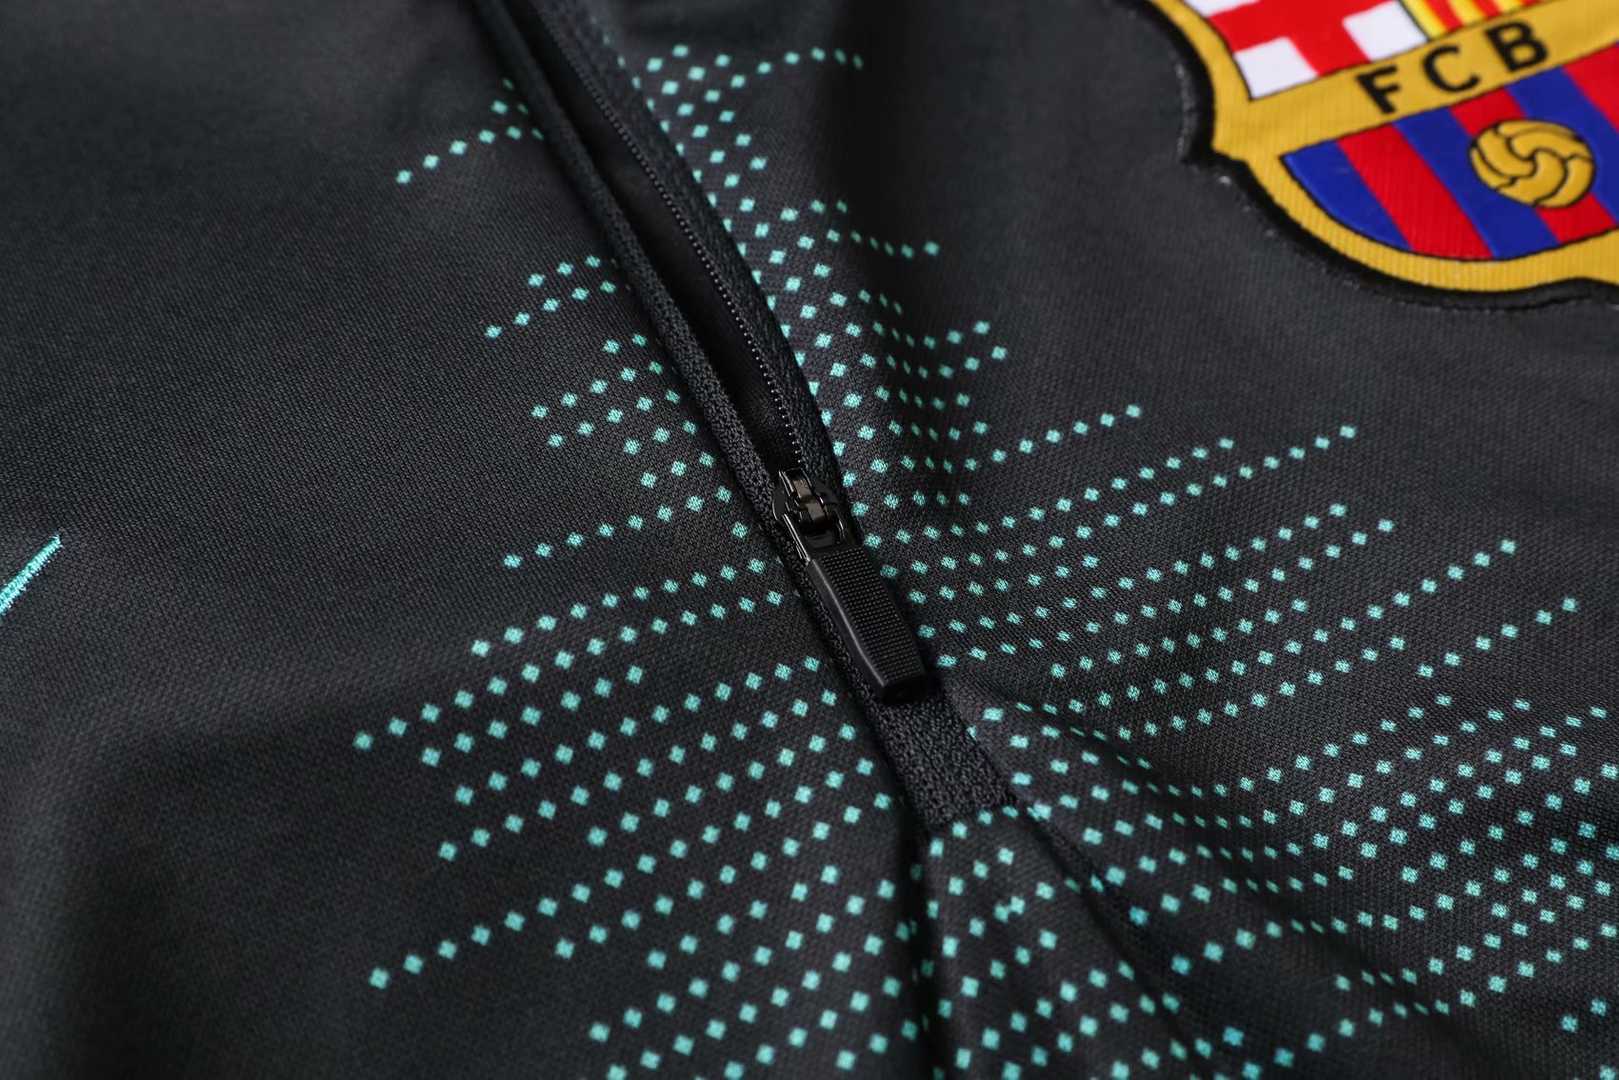 2019/20 Barcelona Half Zip Grey Mens Soccer Training Suit(Jacket + Pants)